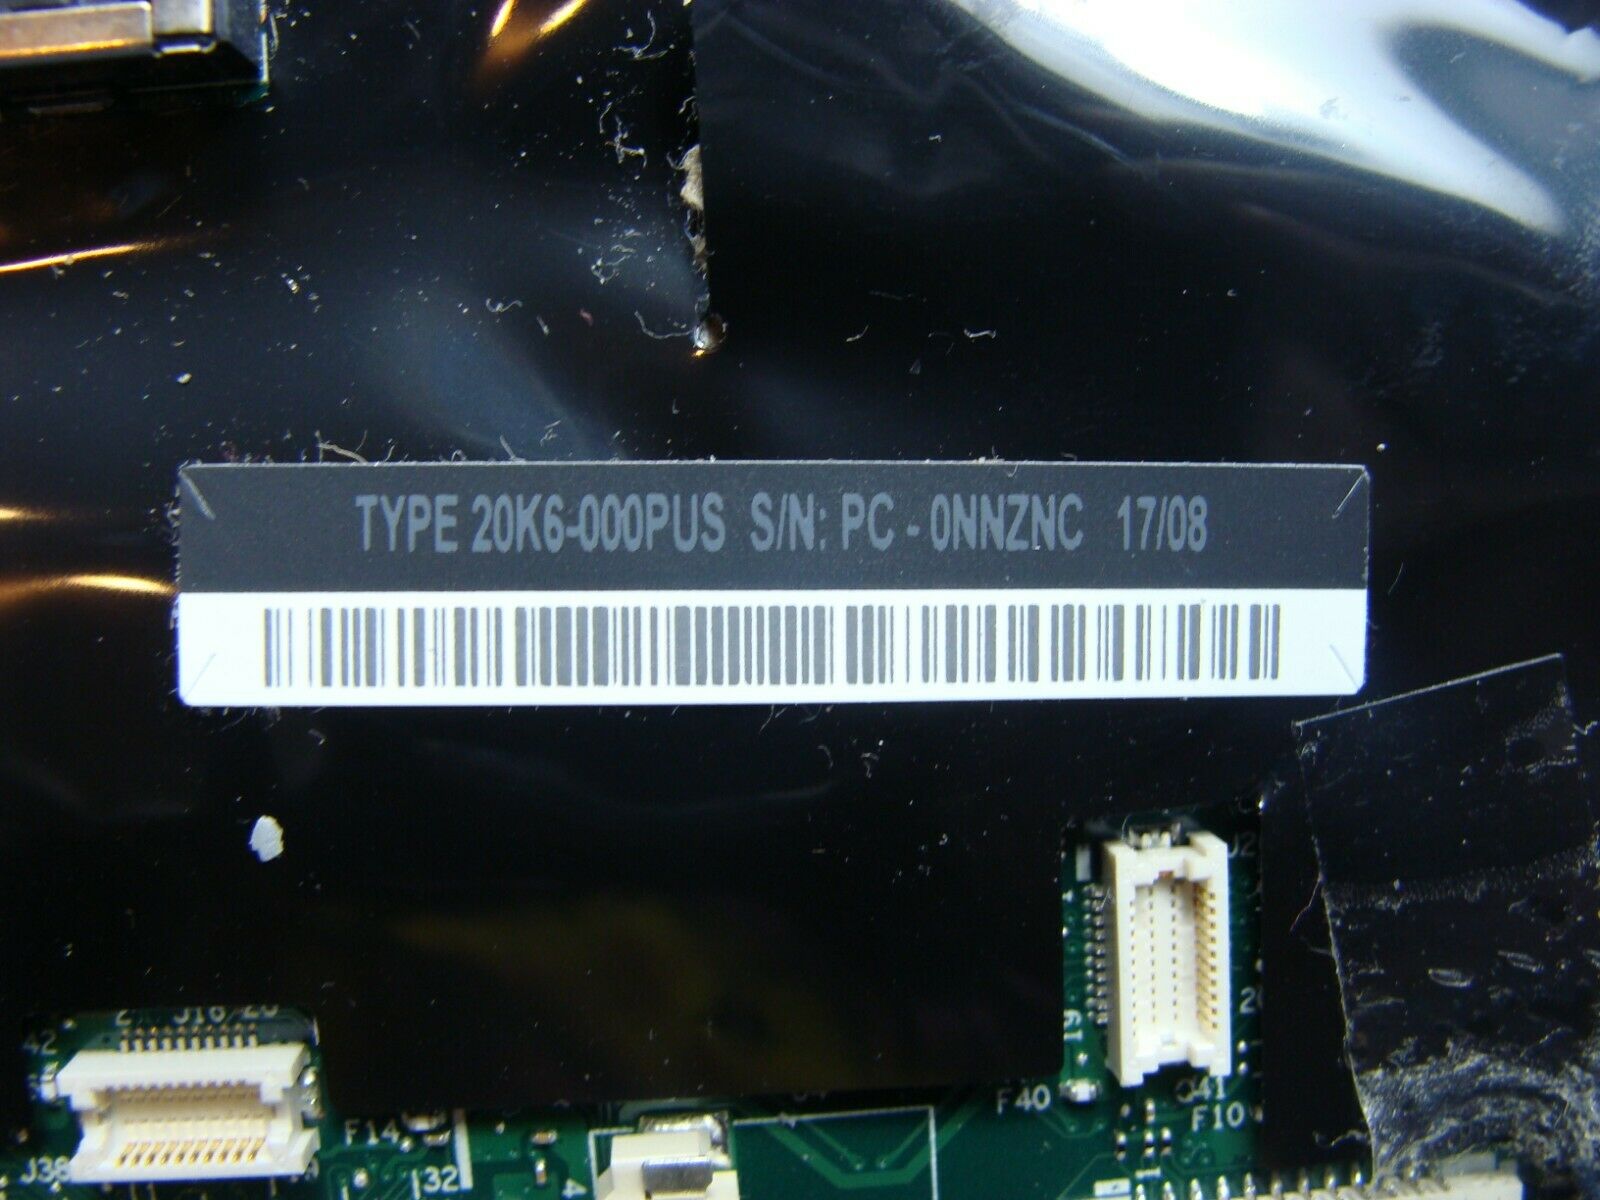 Lenovo ThinkPad 12.5